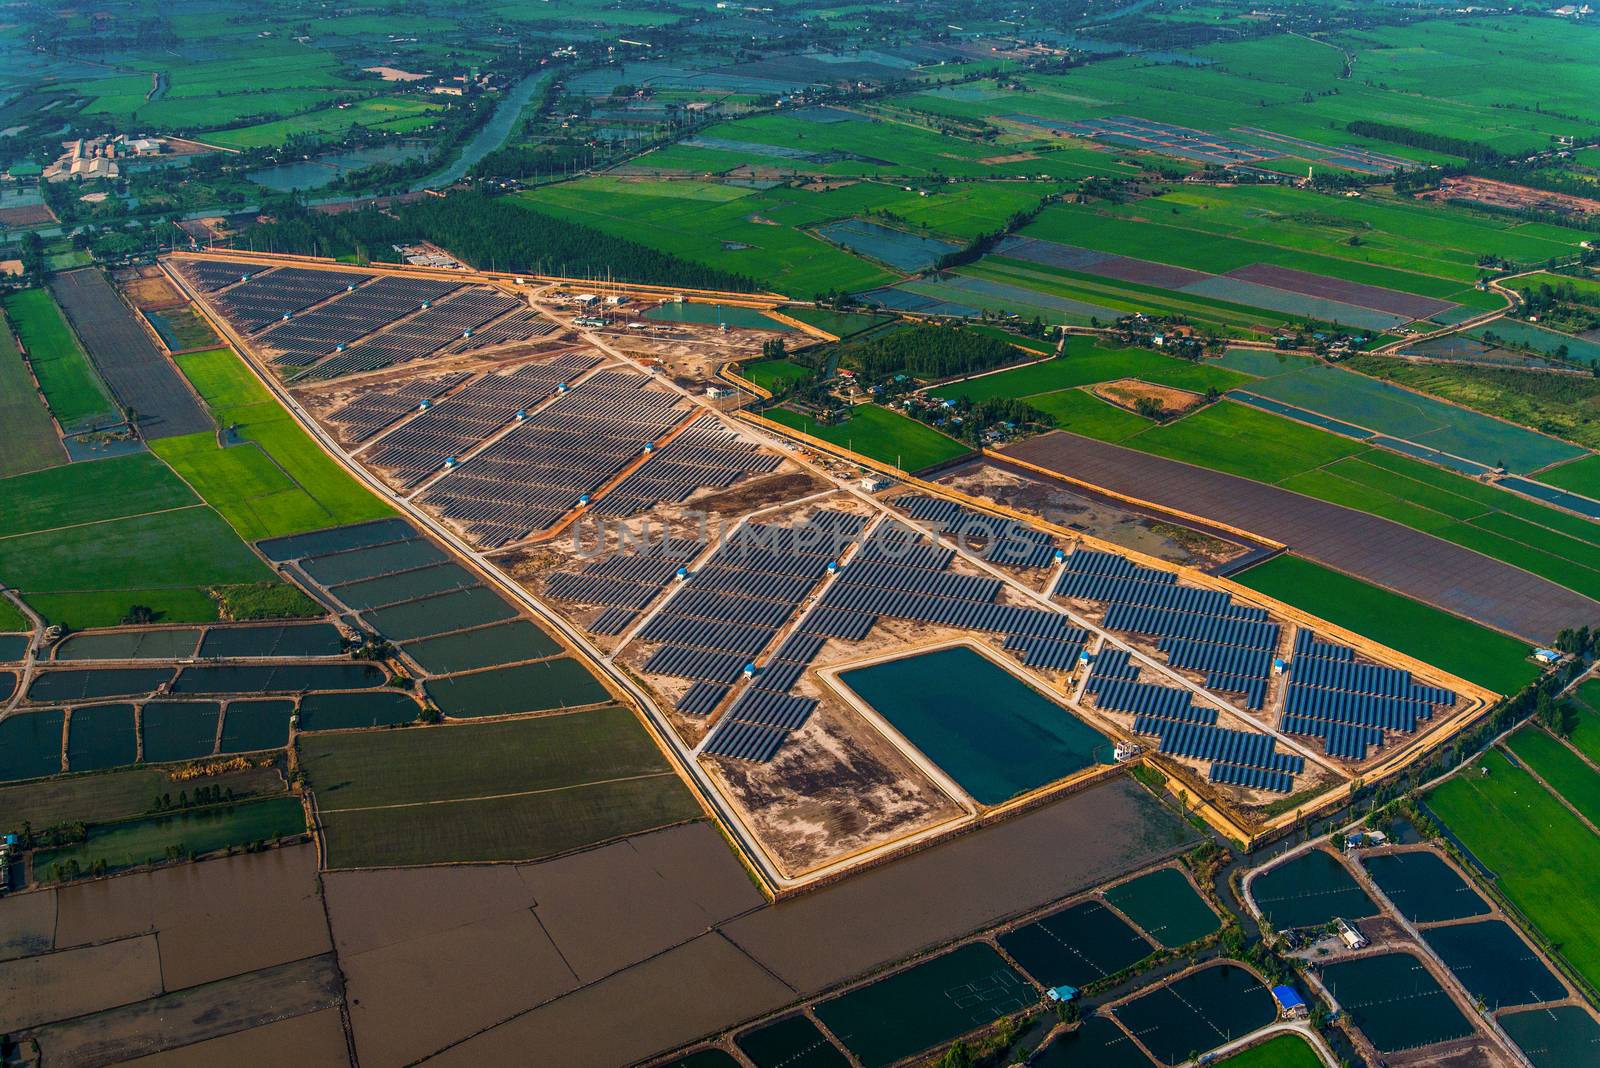 Solar farm, solar panels photo from the air